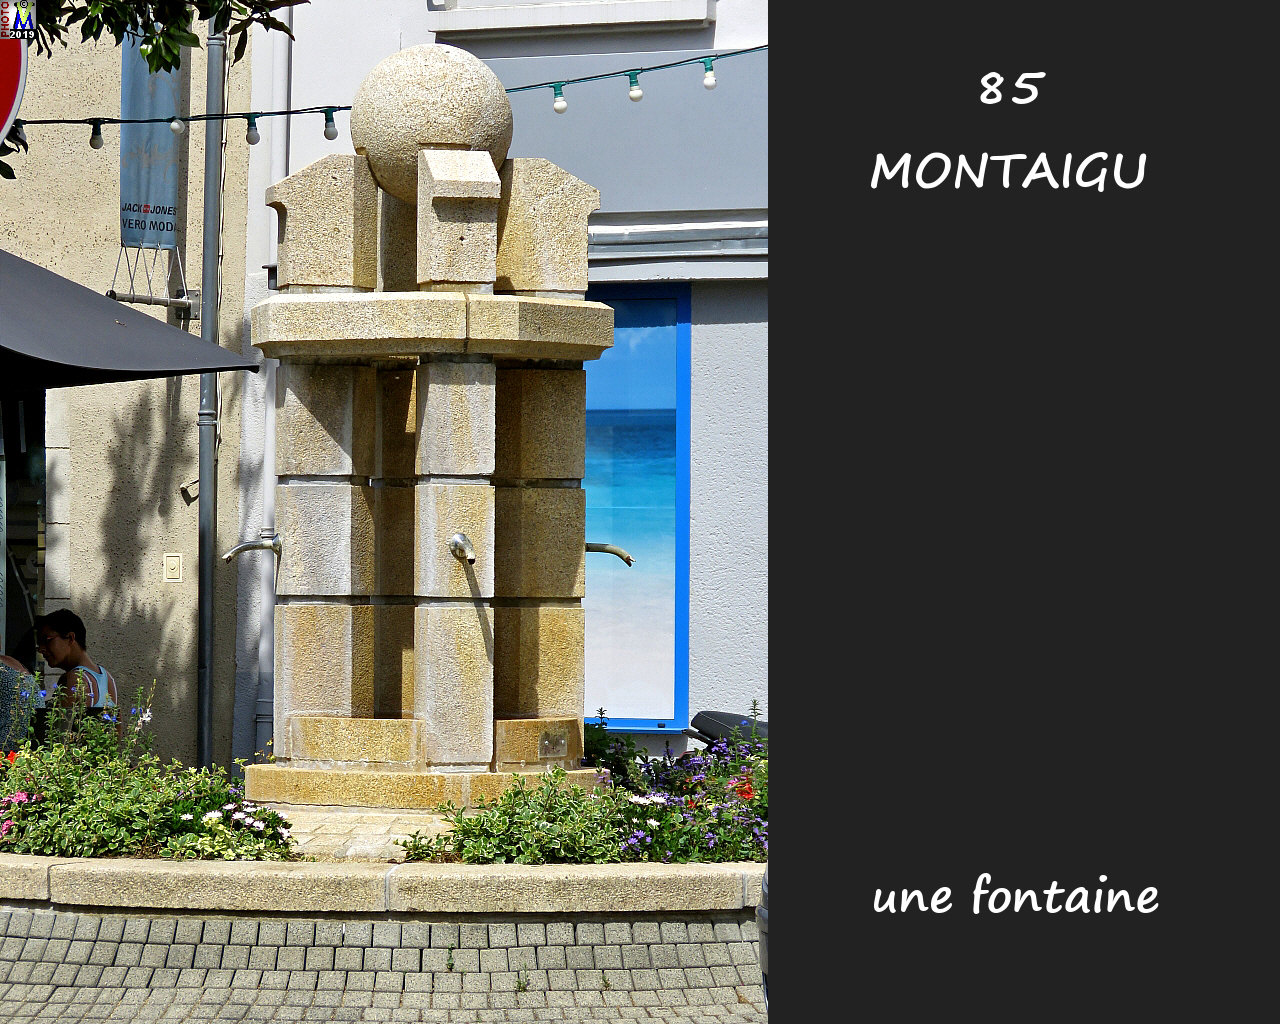 85MONTAIGU_fontaine_1000.jpg